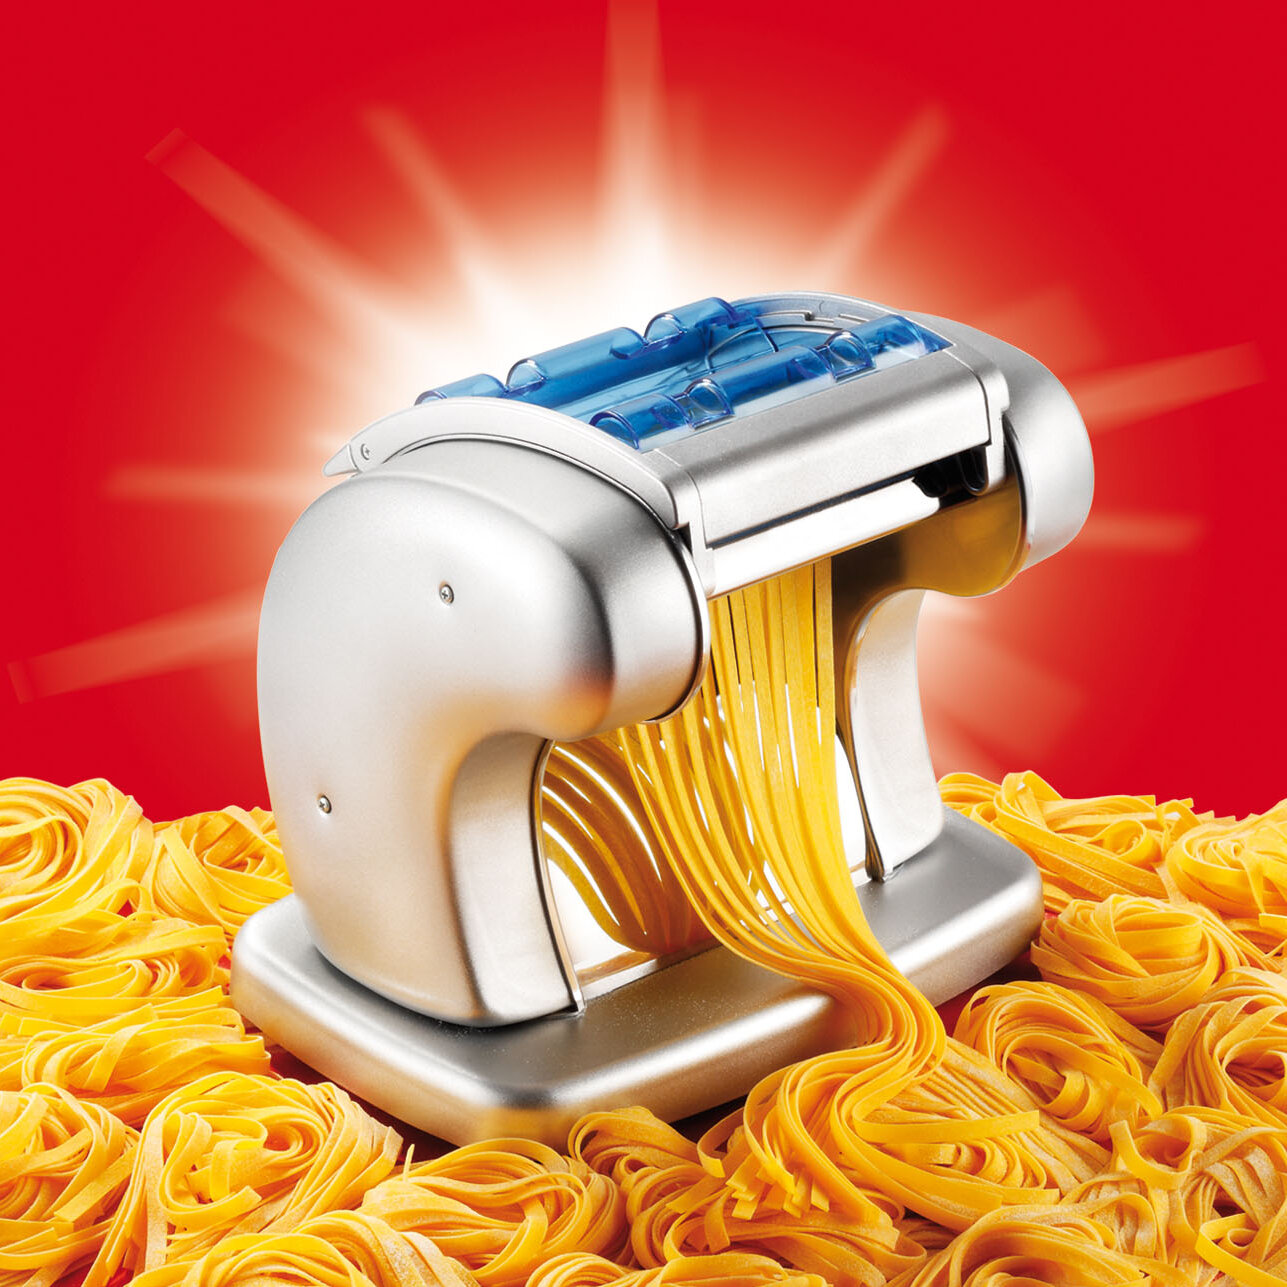 Imperia Pasta Machine & Pasta Dryer, Red